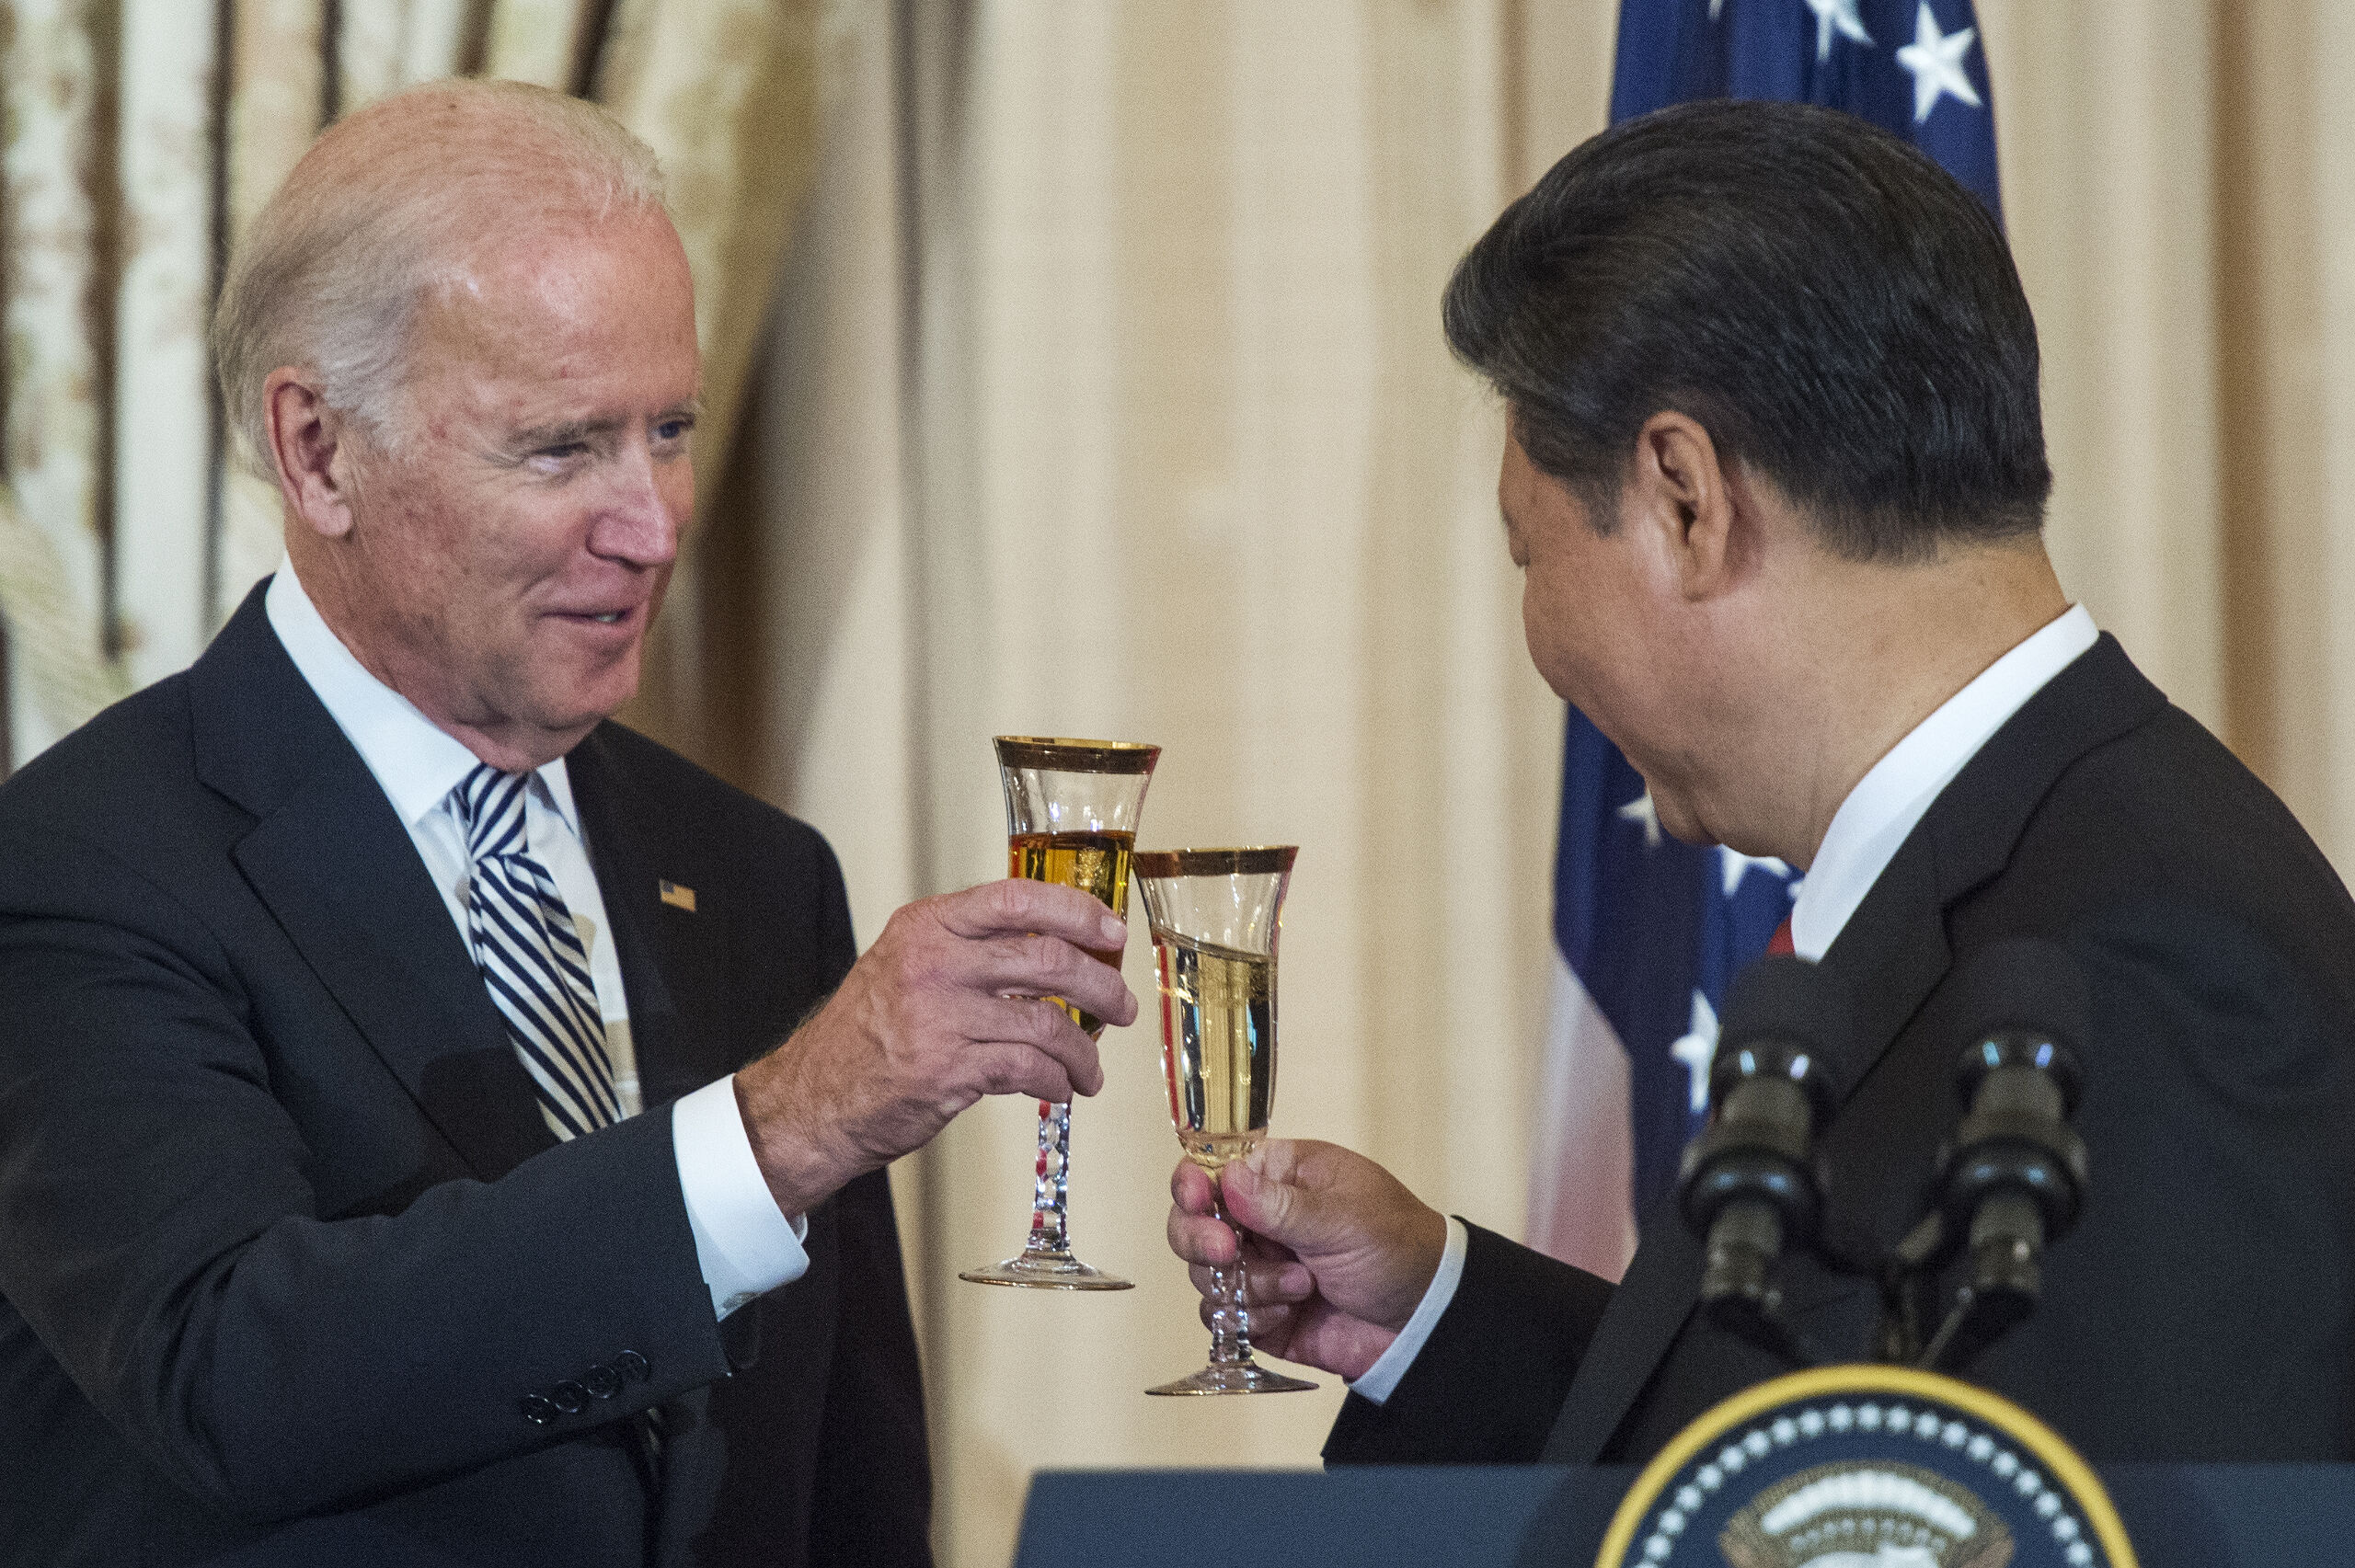 Toenmalige vice-president Joe Biden toost met de Chinese president Xi Jinping tijdens een lunch in Washington in 2015.